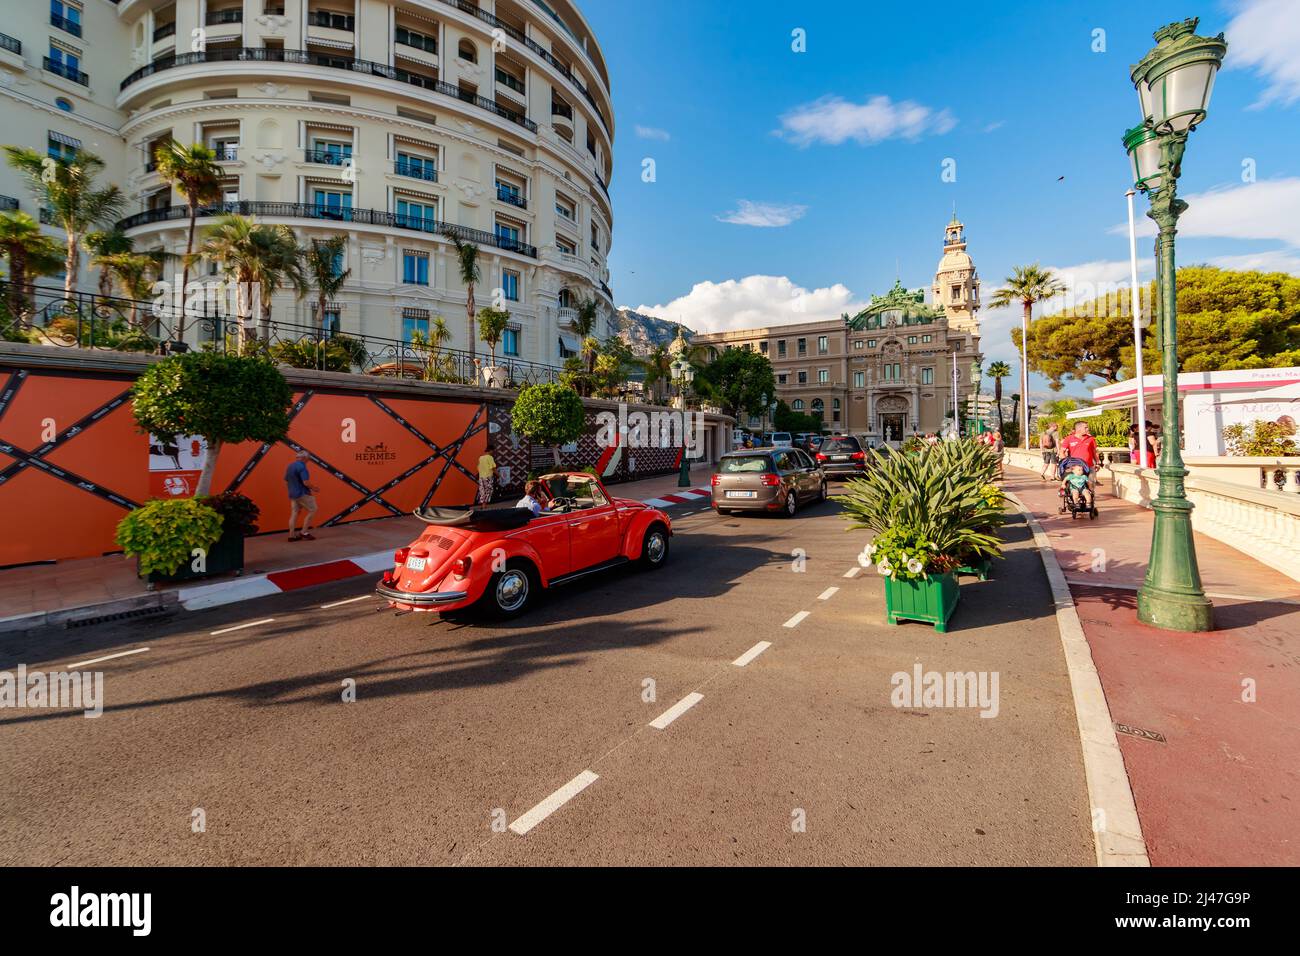 Monaco, Monte-Carlo, 21 août 2017 : les touristes et les riches visitent des boutiques de marque près de l'hôtel Paris et du Casino Monte-Carlo au coucher du soleil, vintage Banque D'Images